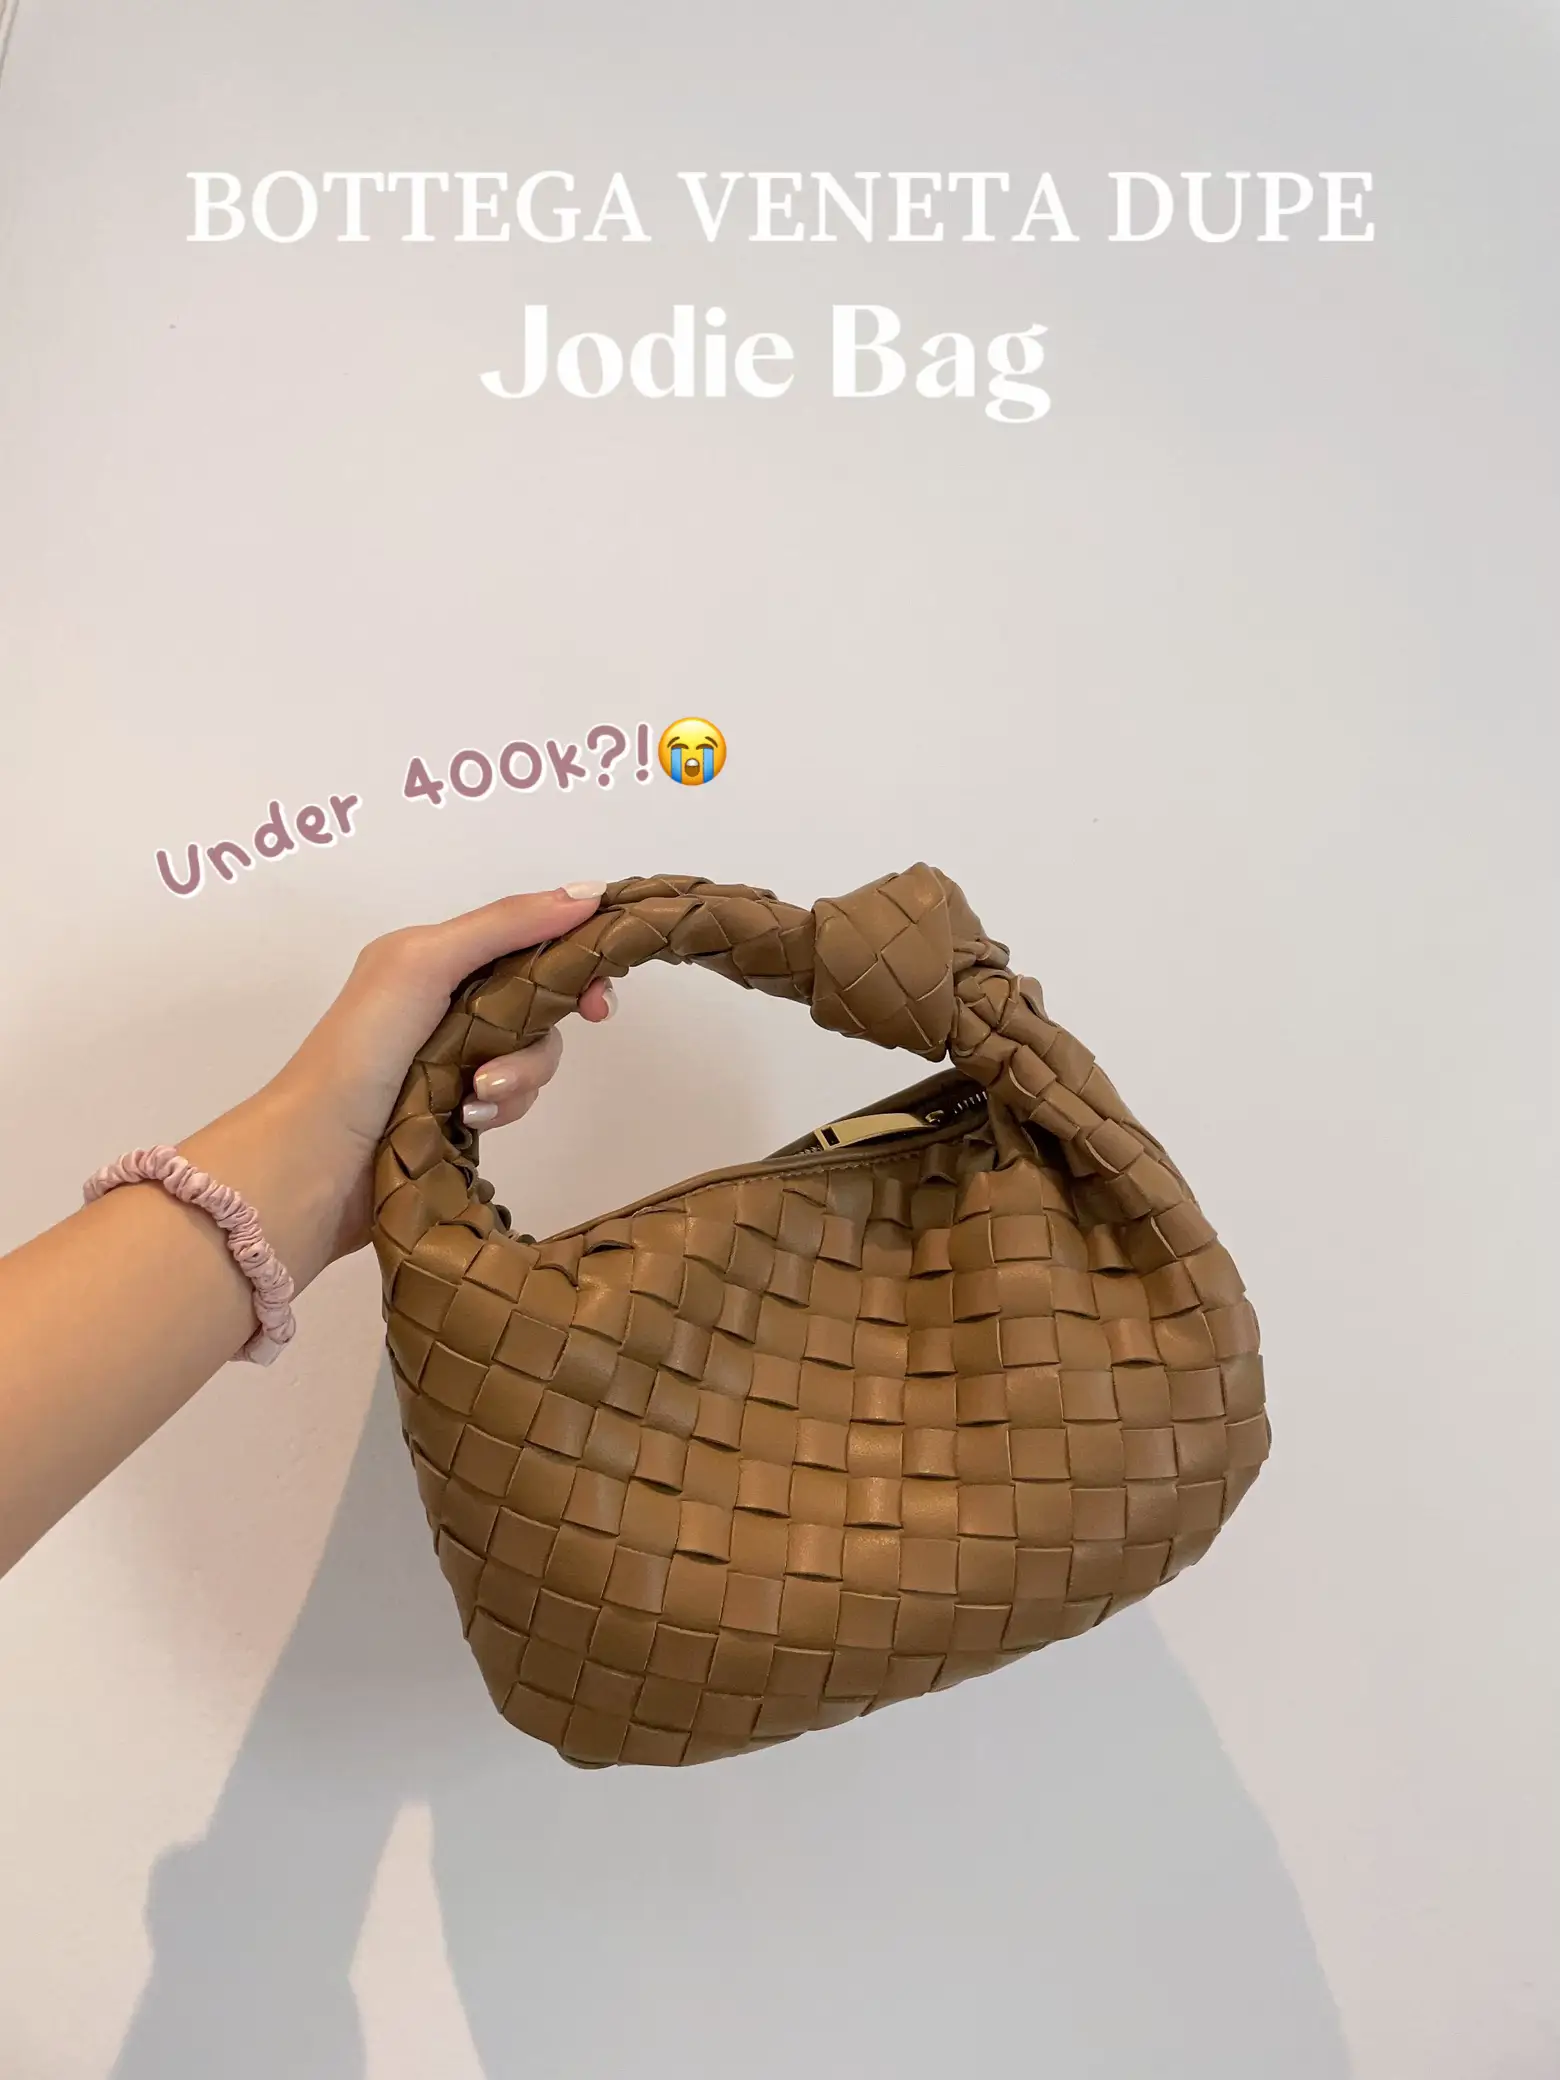 Designer Dupe Alert: Bottega Veneta Jodie Bag - The Brunette Nomad